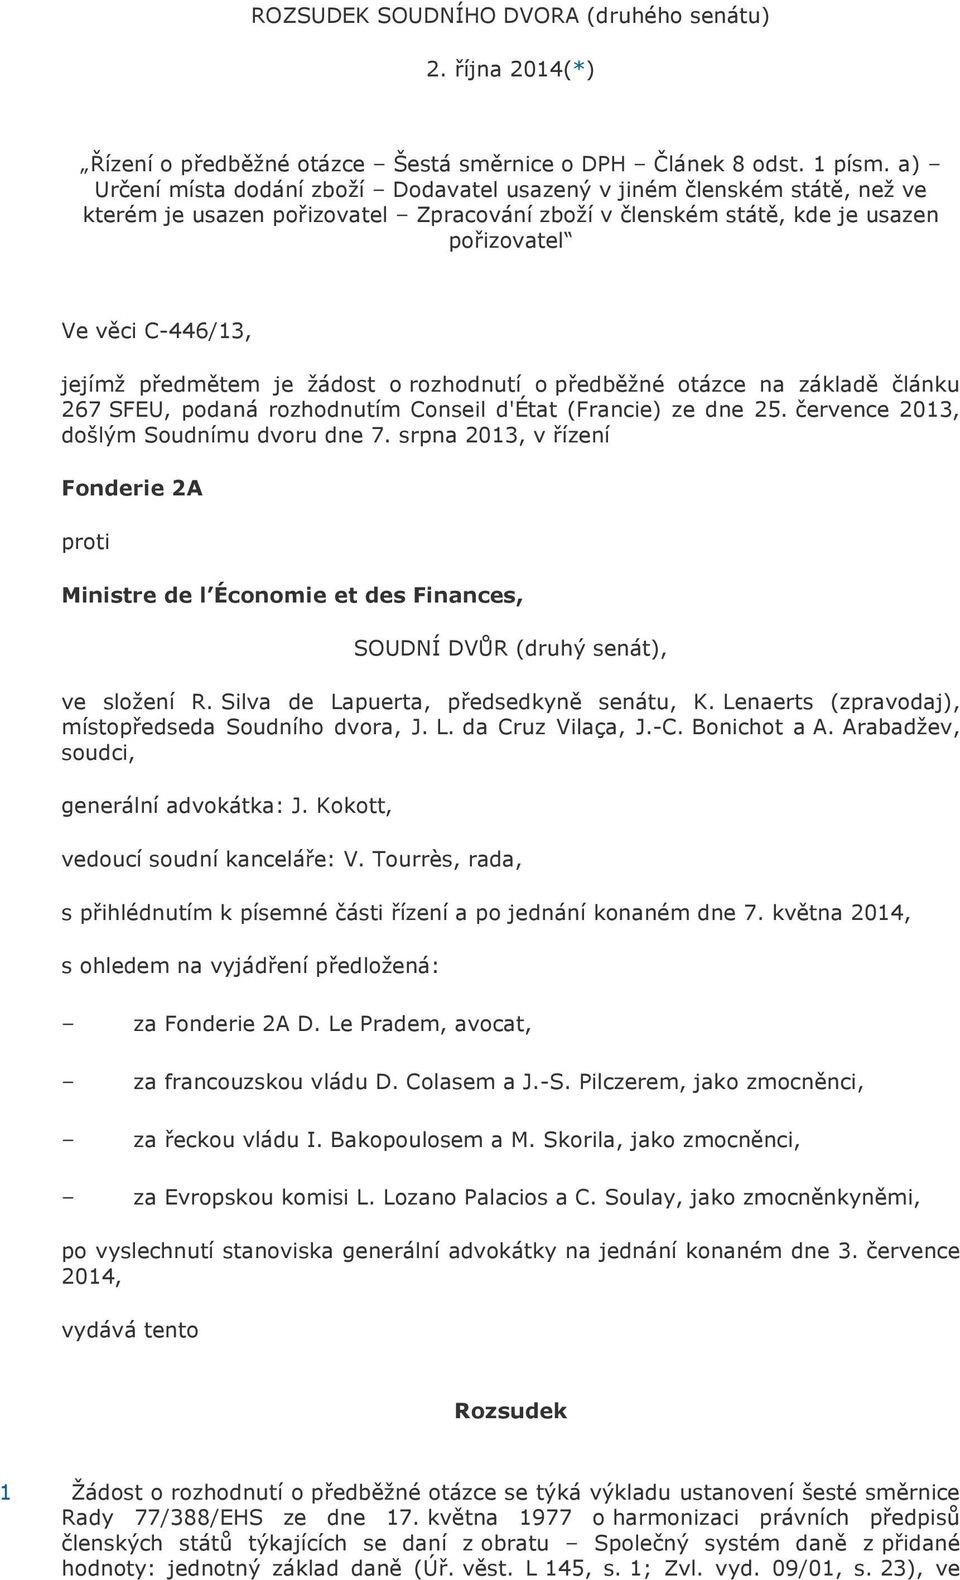 předmětem je žádost o rozhodnutí o předběžné otázce na základě článku 267 SFEU, podaná rozhodnutím Conseil d'état (Francie) ze dne 25. července 2013, došlým Soudnímu dvoru dne 7.